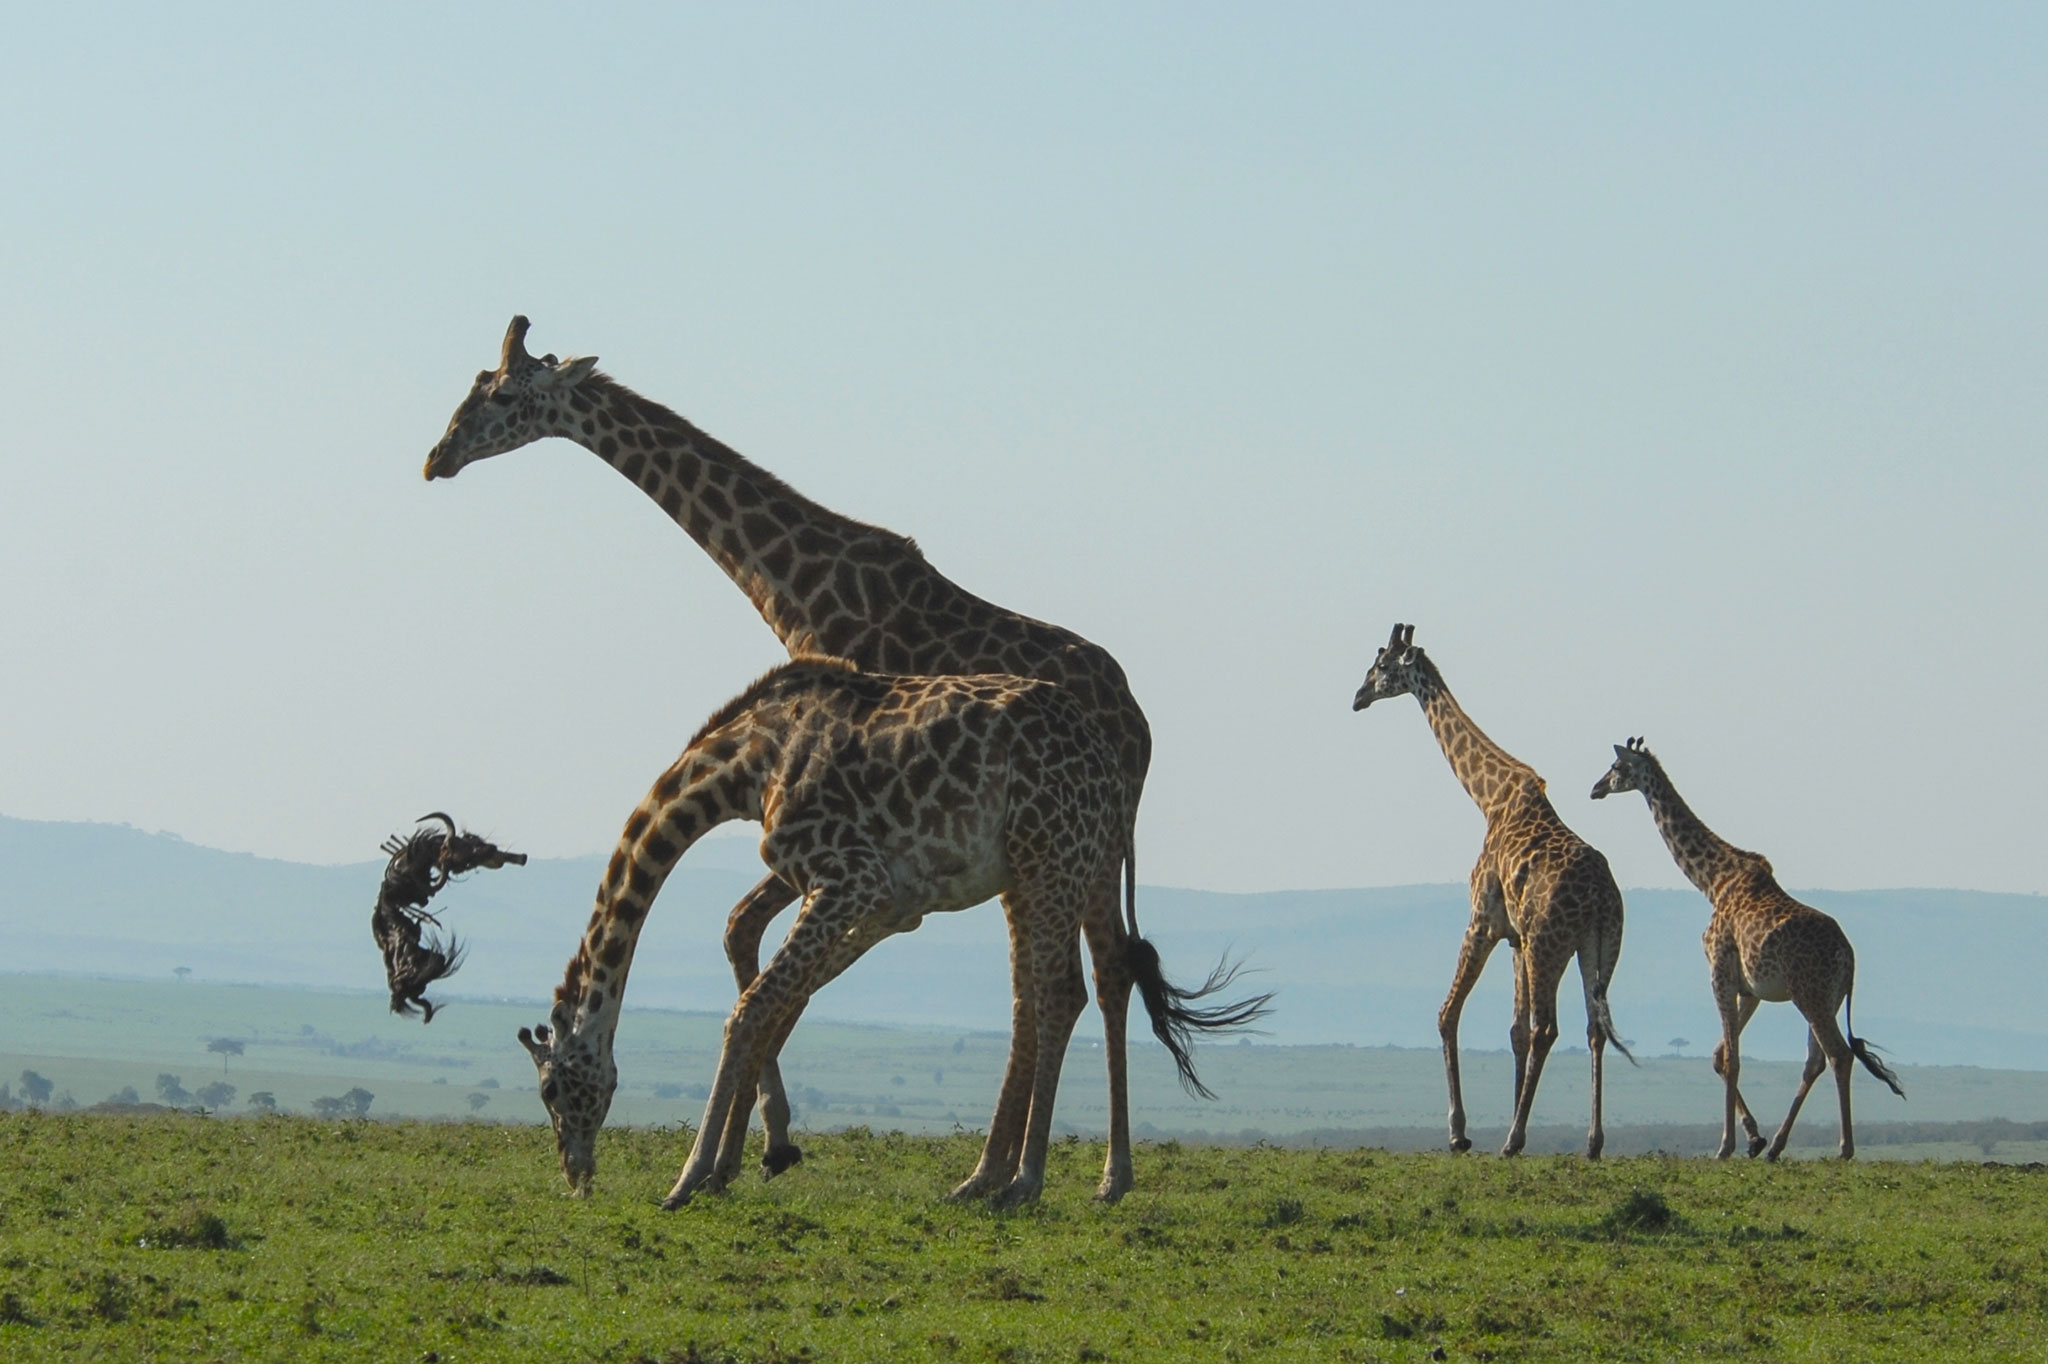 Giraffe Tosses Dead Wildebeest Around in Bizarre Pictures